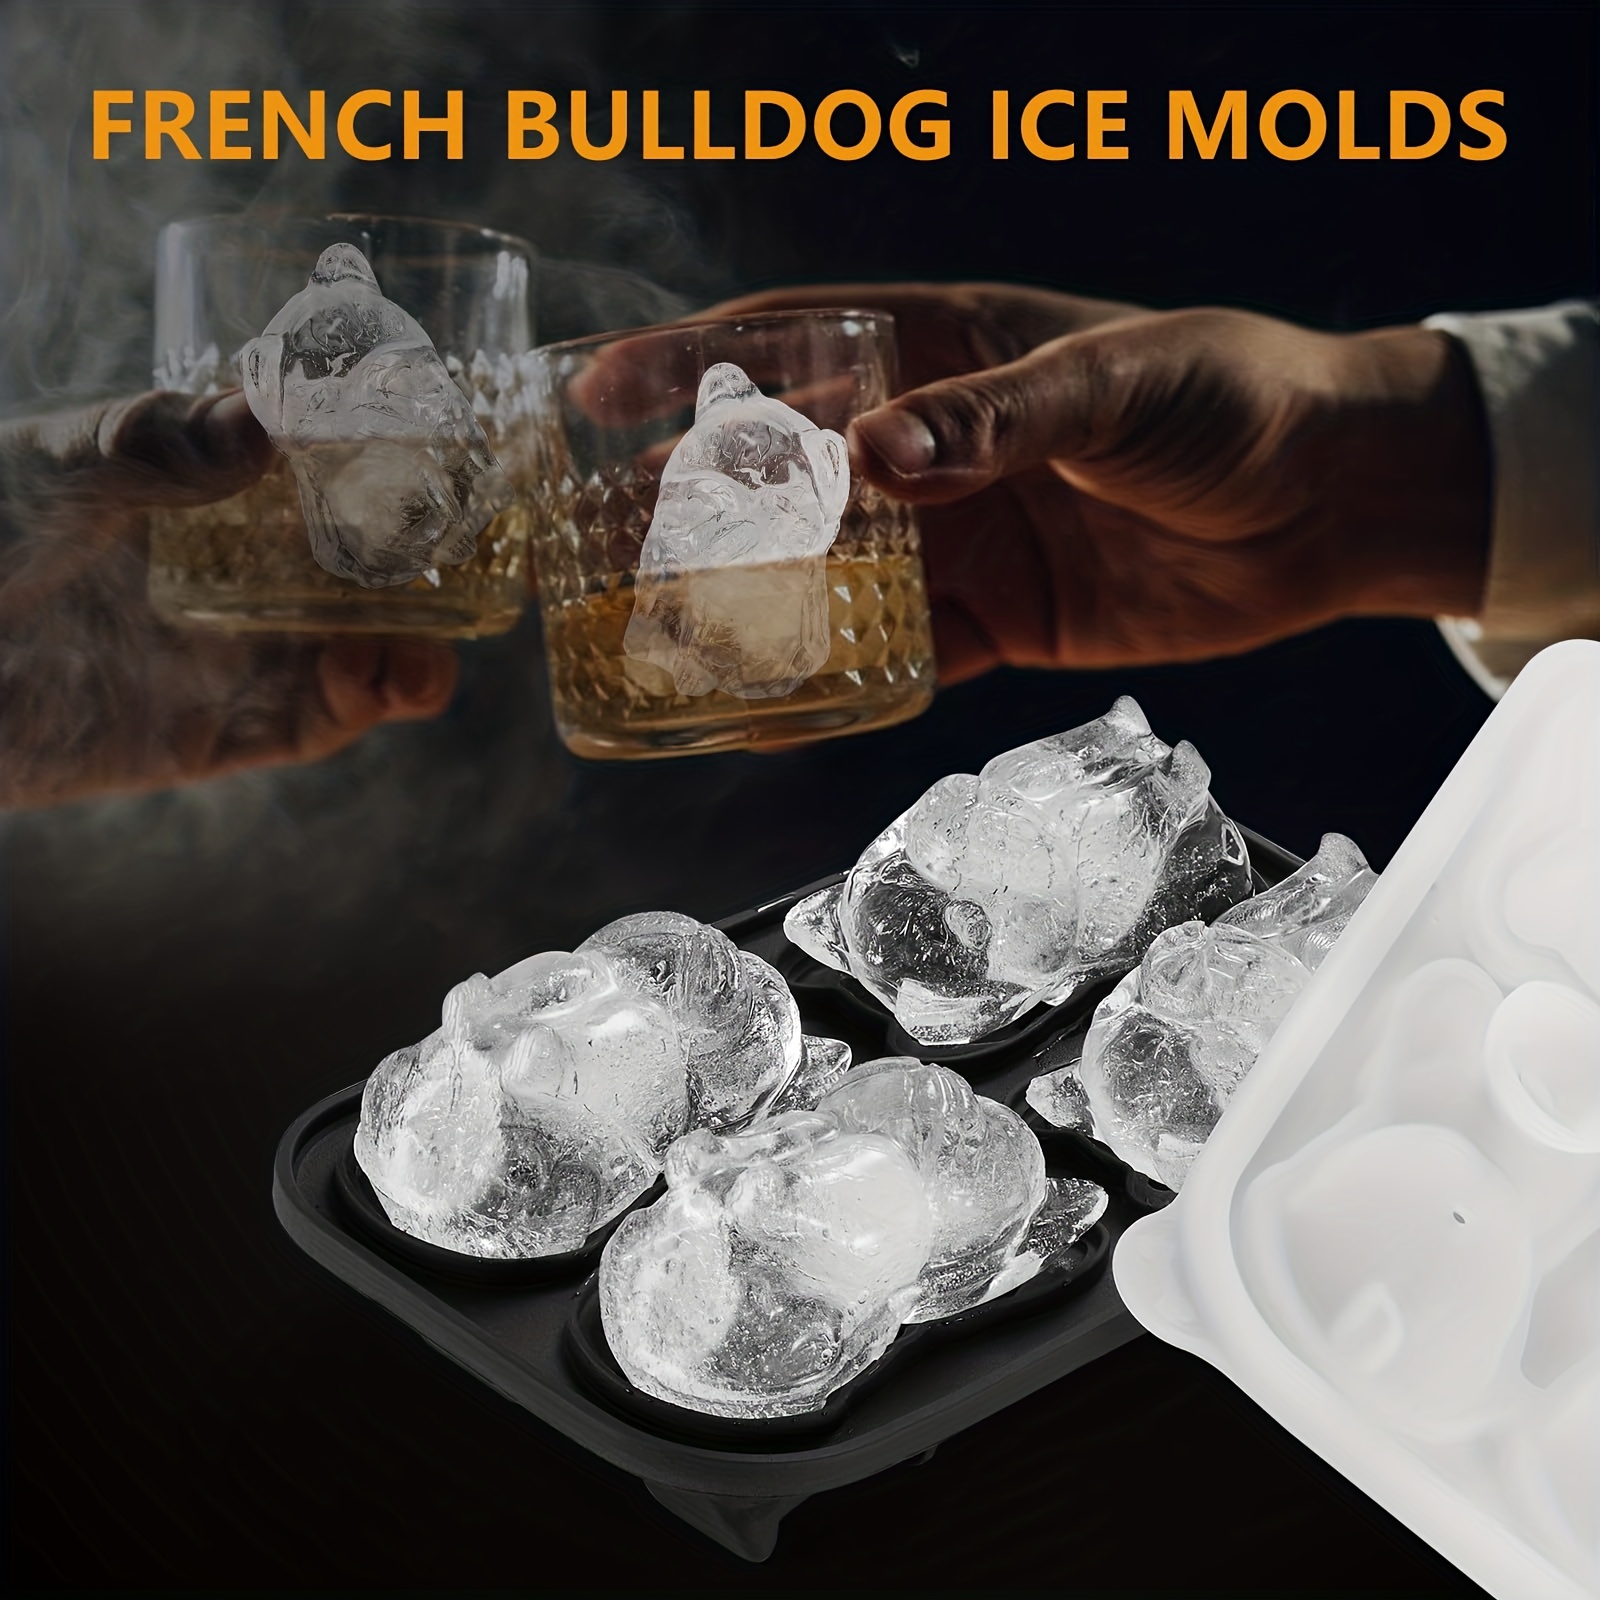 This Bulldog Ice Mold Makes Bulldog Shaped Ice Cubes